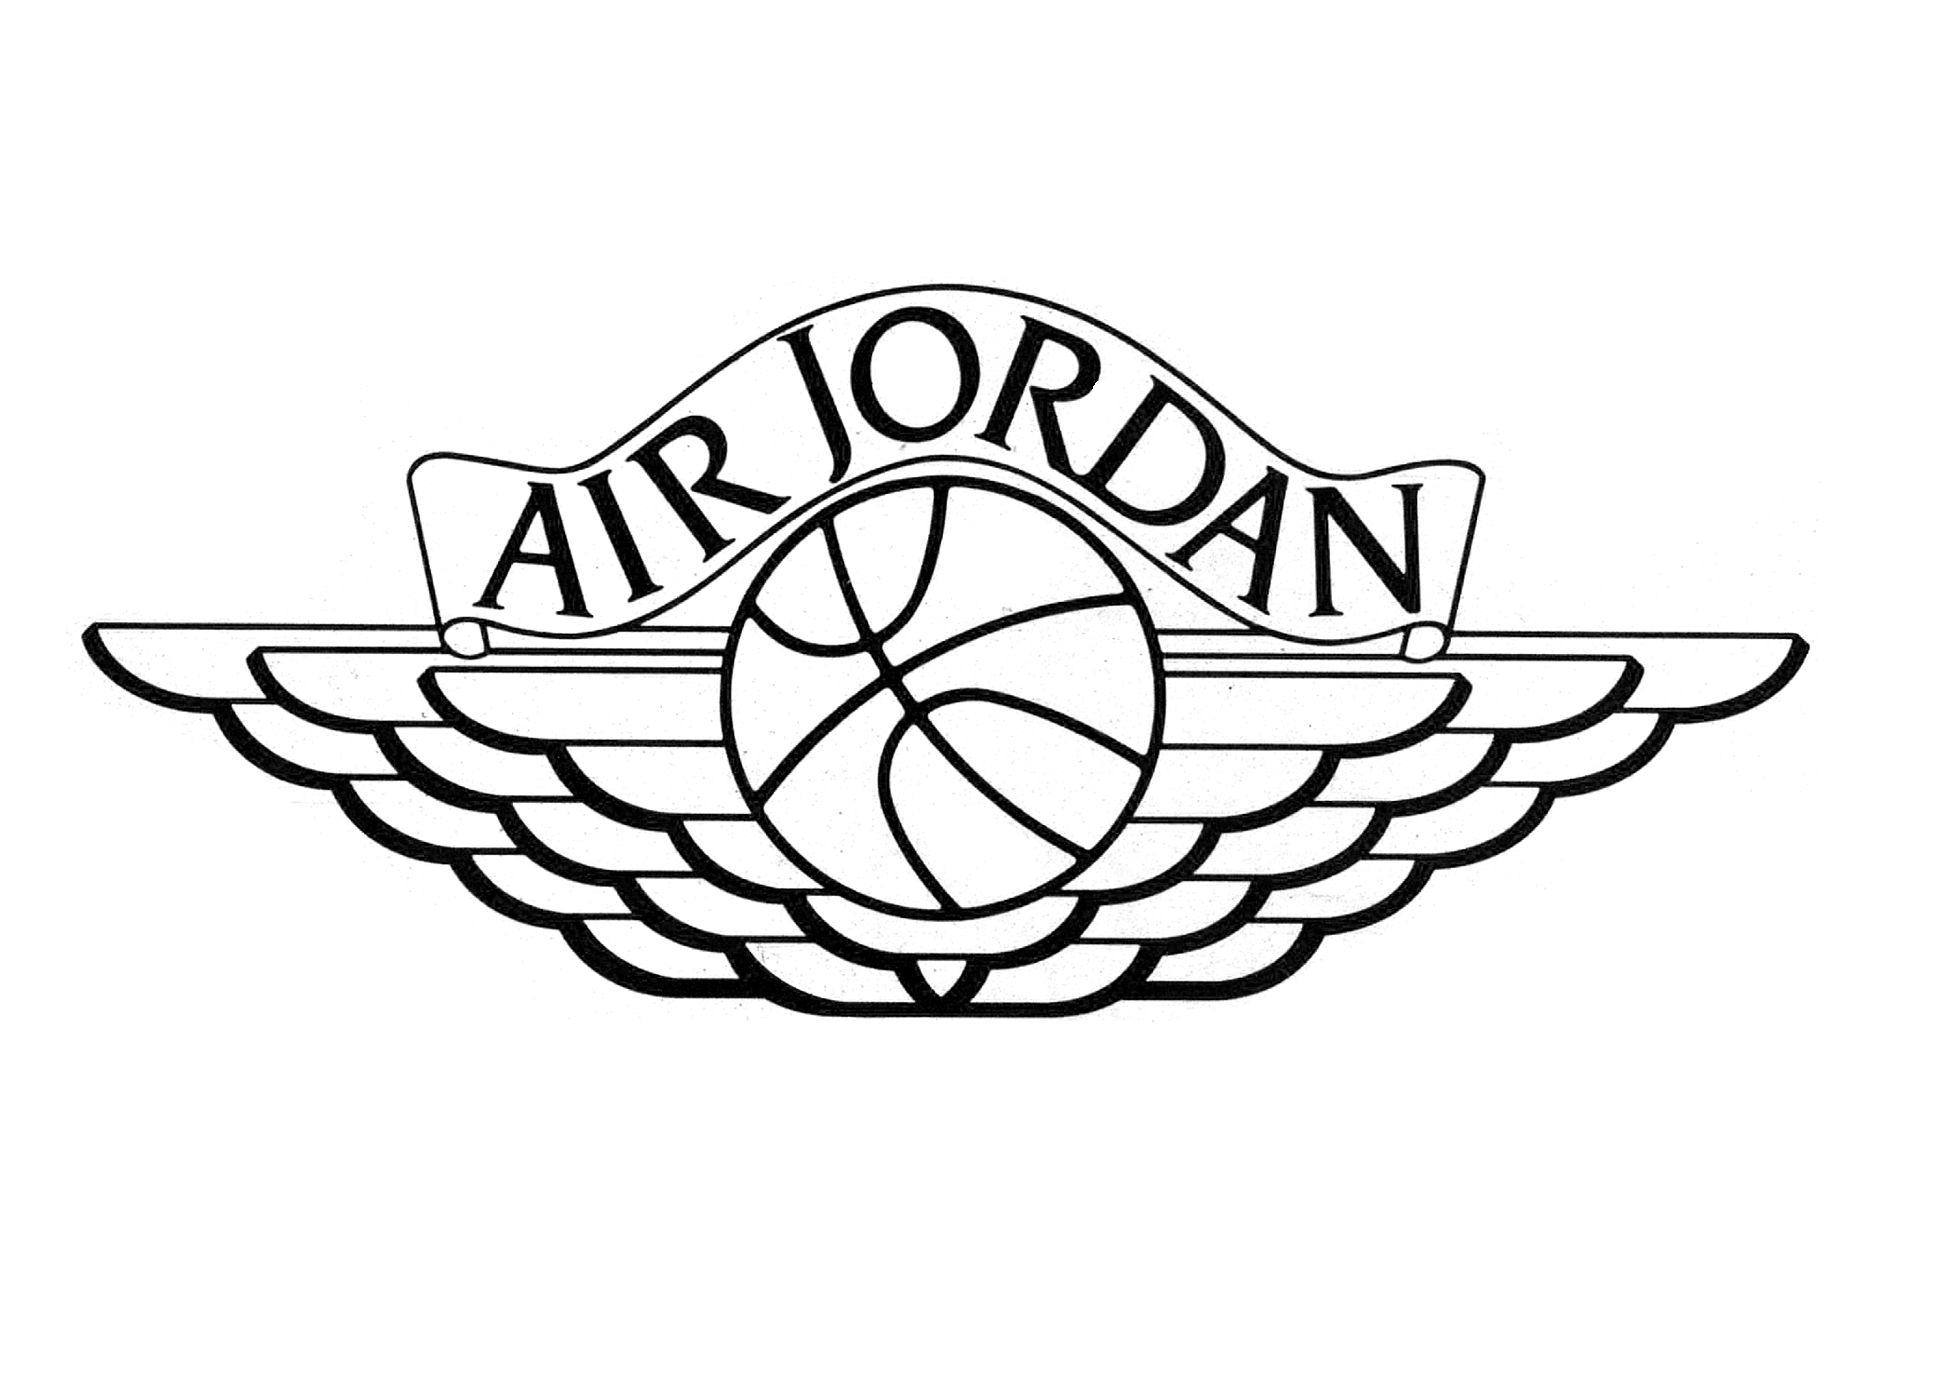 Jordan Flight Logo - air jordan flight logo - Google Search | Boys Bar -Mitzvah Ideas ...